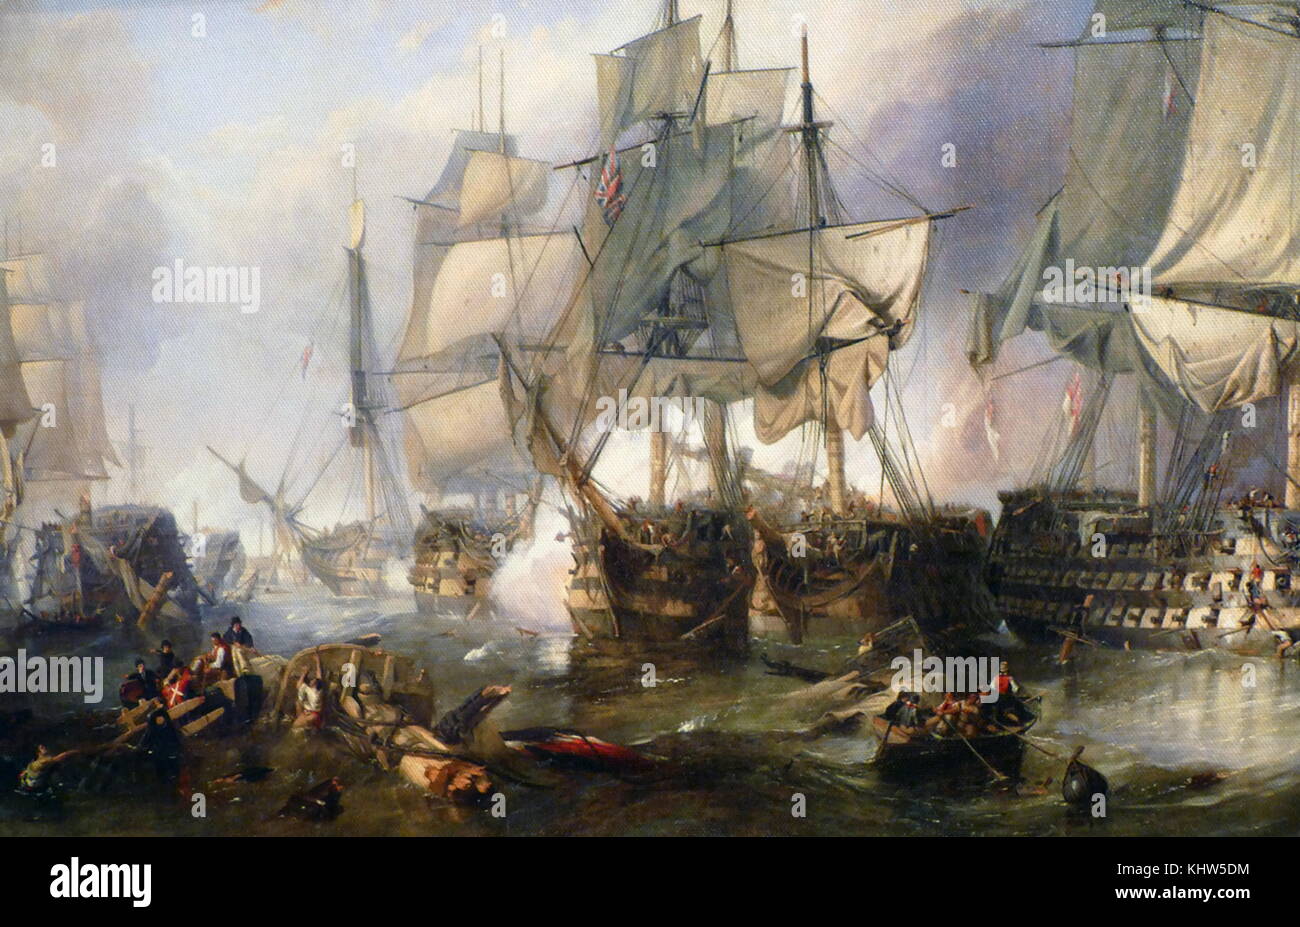 Gemälde mit dem Titel "Die Schlacht von Trafalgar 1805' von John Frederick Lewis (1793-1867) ein englischer Marinemaler. Vom 19. Jahrhundert Stockfoto